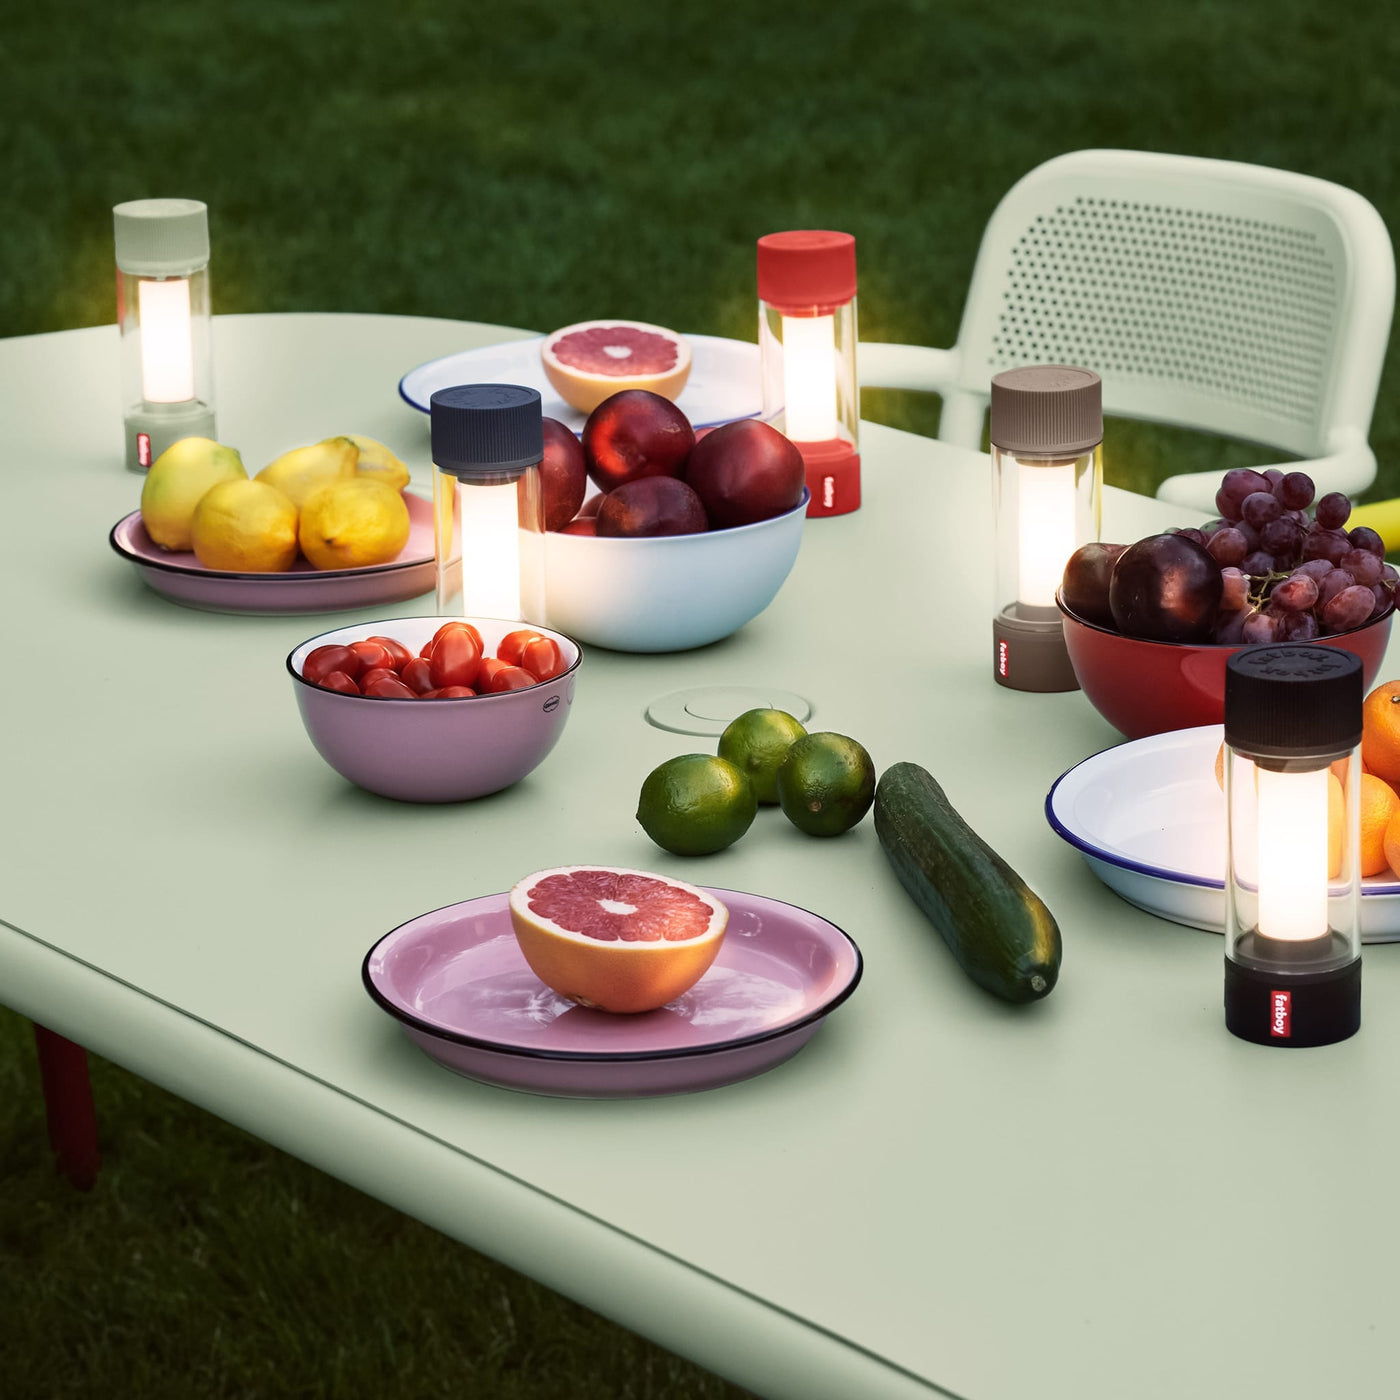 Table à dîner Toní Tablo de Fatboy : design minimaliste et mobilité facile.